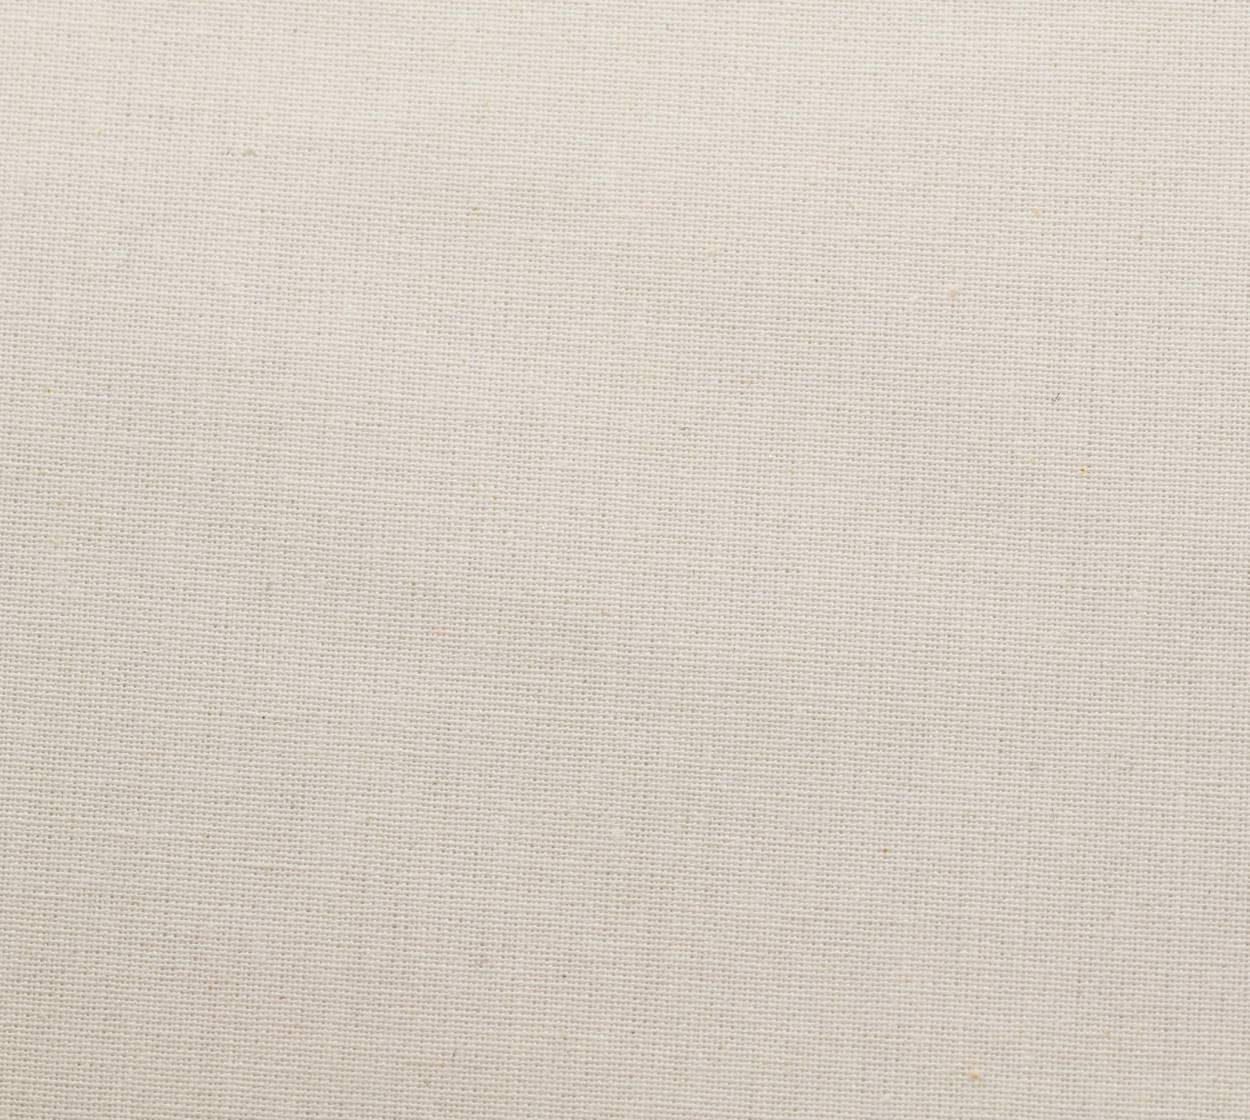 Nessel Baumwolle, weiß, 4,20 m breit, 6N14 im Stamm online Store München